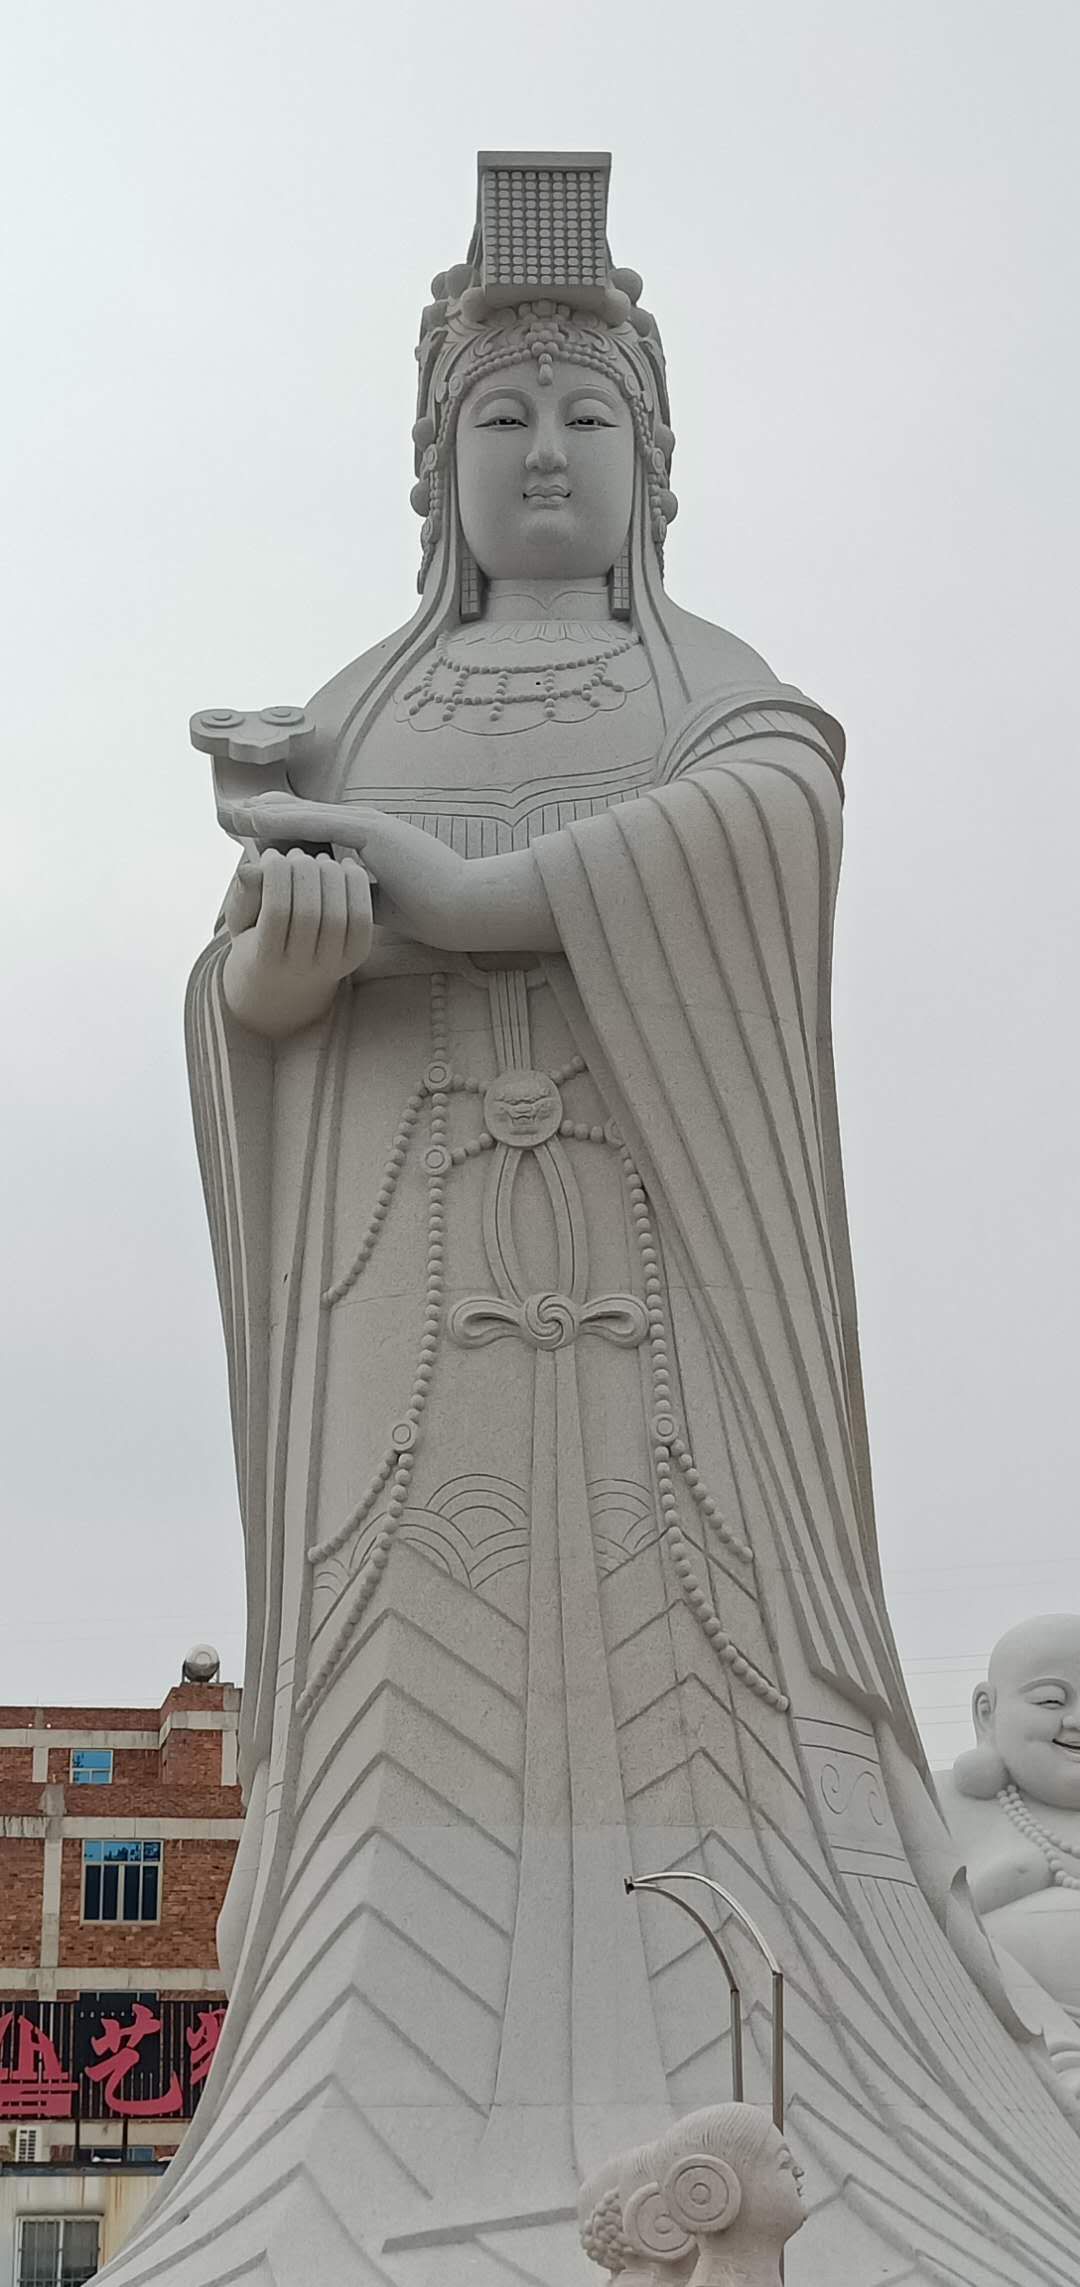 惠安海亨石雕 妈祖雕像一尊 海员、商人供奉神祗